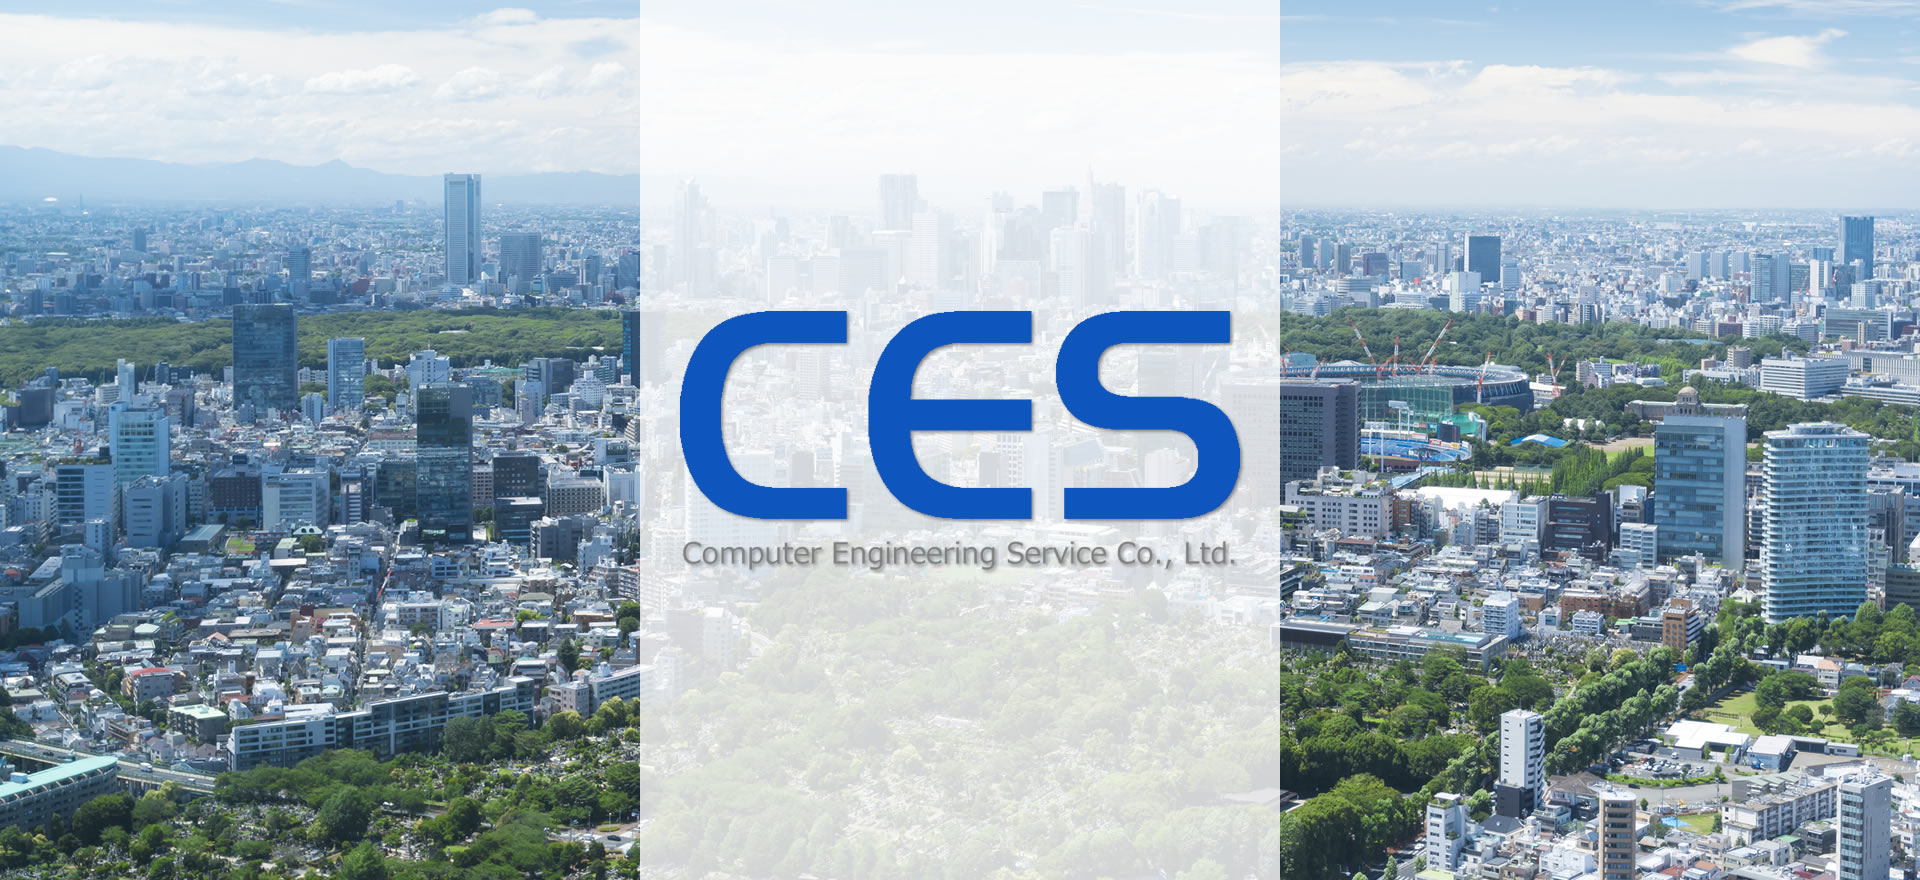 コンピュータエンジニアリングサービス株式会社（CES）／東京都港区南青山／青山一丁目駅／システムインテグレーション（SI）・システムービス、システムプランニング、コンサルティング、基盤構築、業務アプリケーション開発、ソフトウエアパッケージ開発、情報セキュリティ、事務系システム、システム制御系システム、OS・DBセットアップおよびチューニング、ネットワーク設計、web系システム、オープン系システム、COBOL系システム／官公庁、金融会社、証券会社